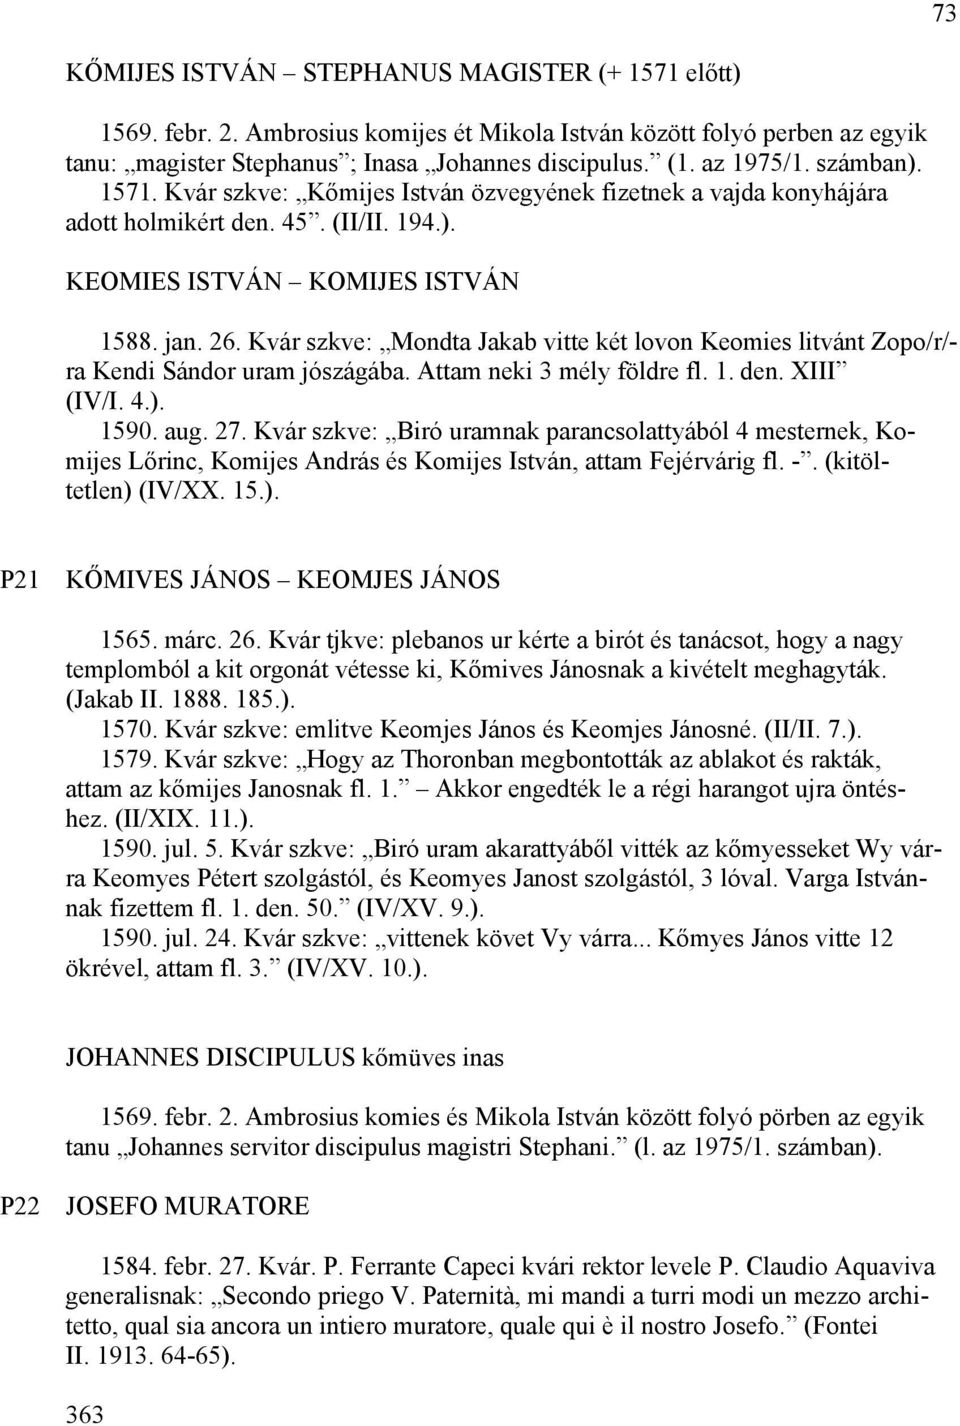 Kvár szkve: Mondta Jakab vitte két lovon Keomies litvánt Zopo/r/- ra Kendi Sándor uram jószágába. Attam neki 3 mély földre fl. 1. den. XIII (IV/I. 4.). 1590. aug. 27.